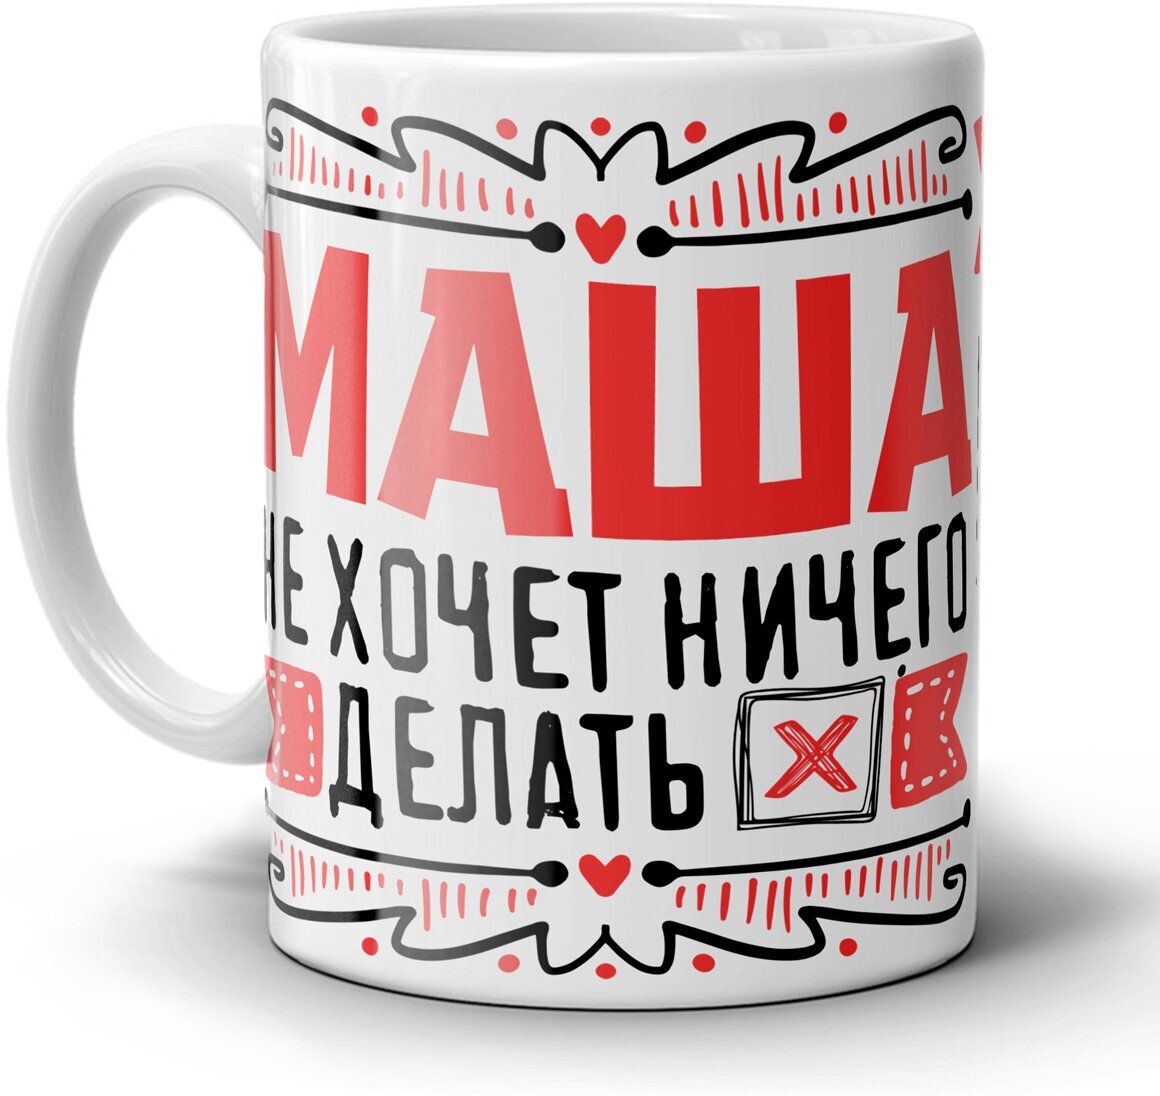 Кружка 1-st Cup с приколом именная для коллеги Маша хочет в отпуск